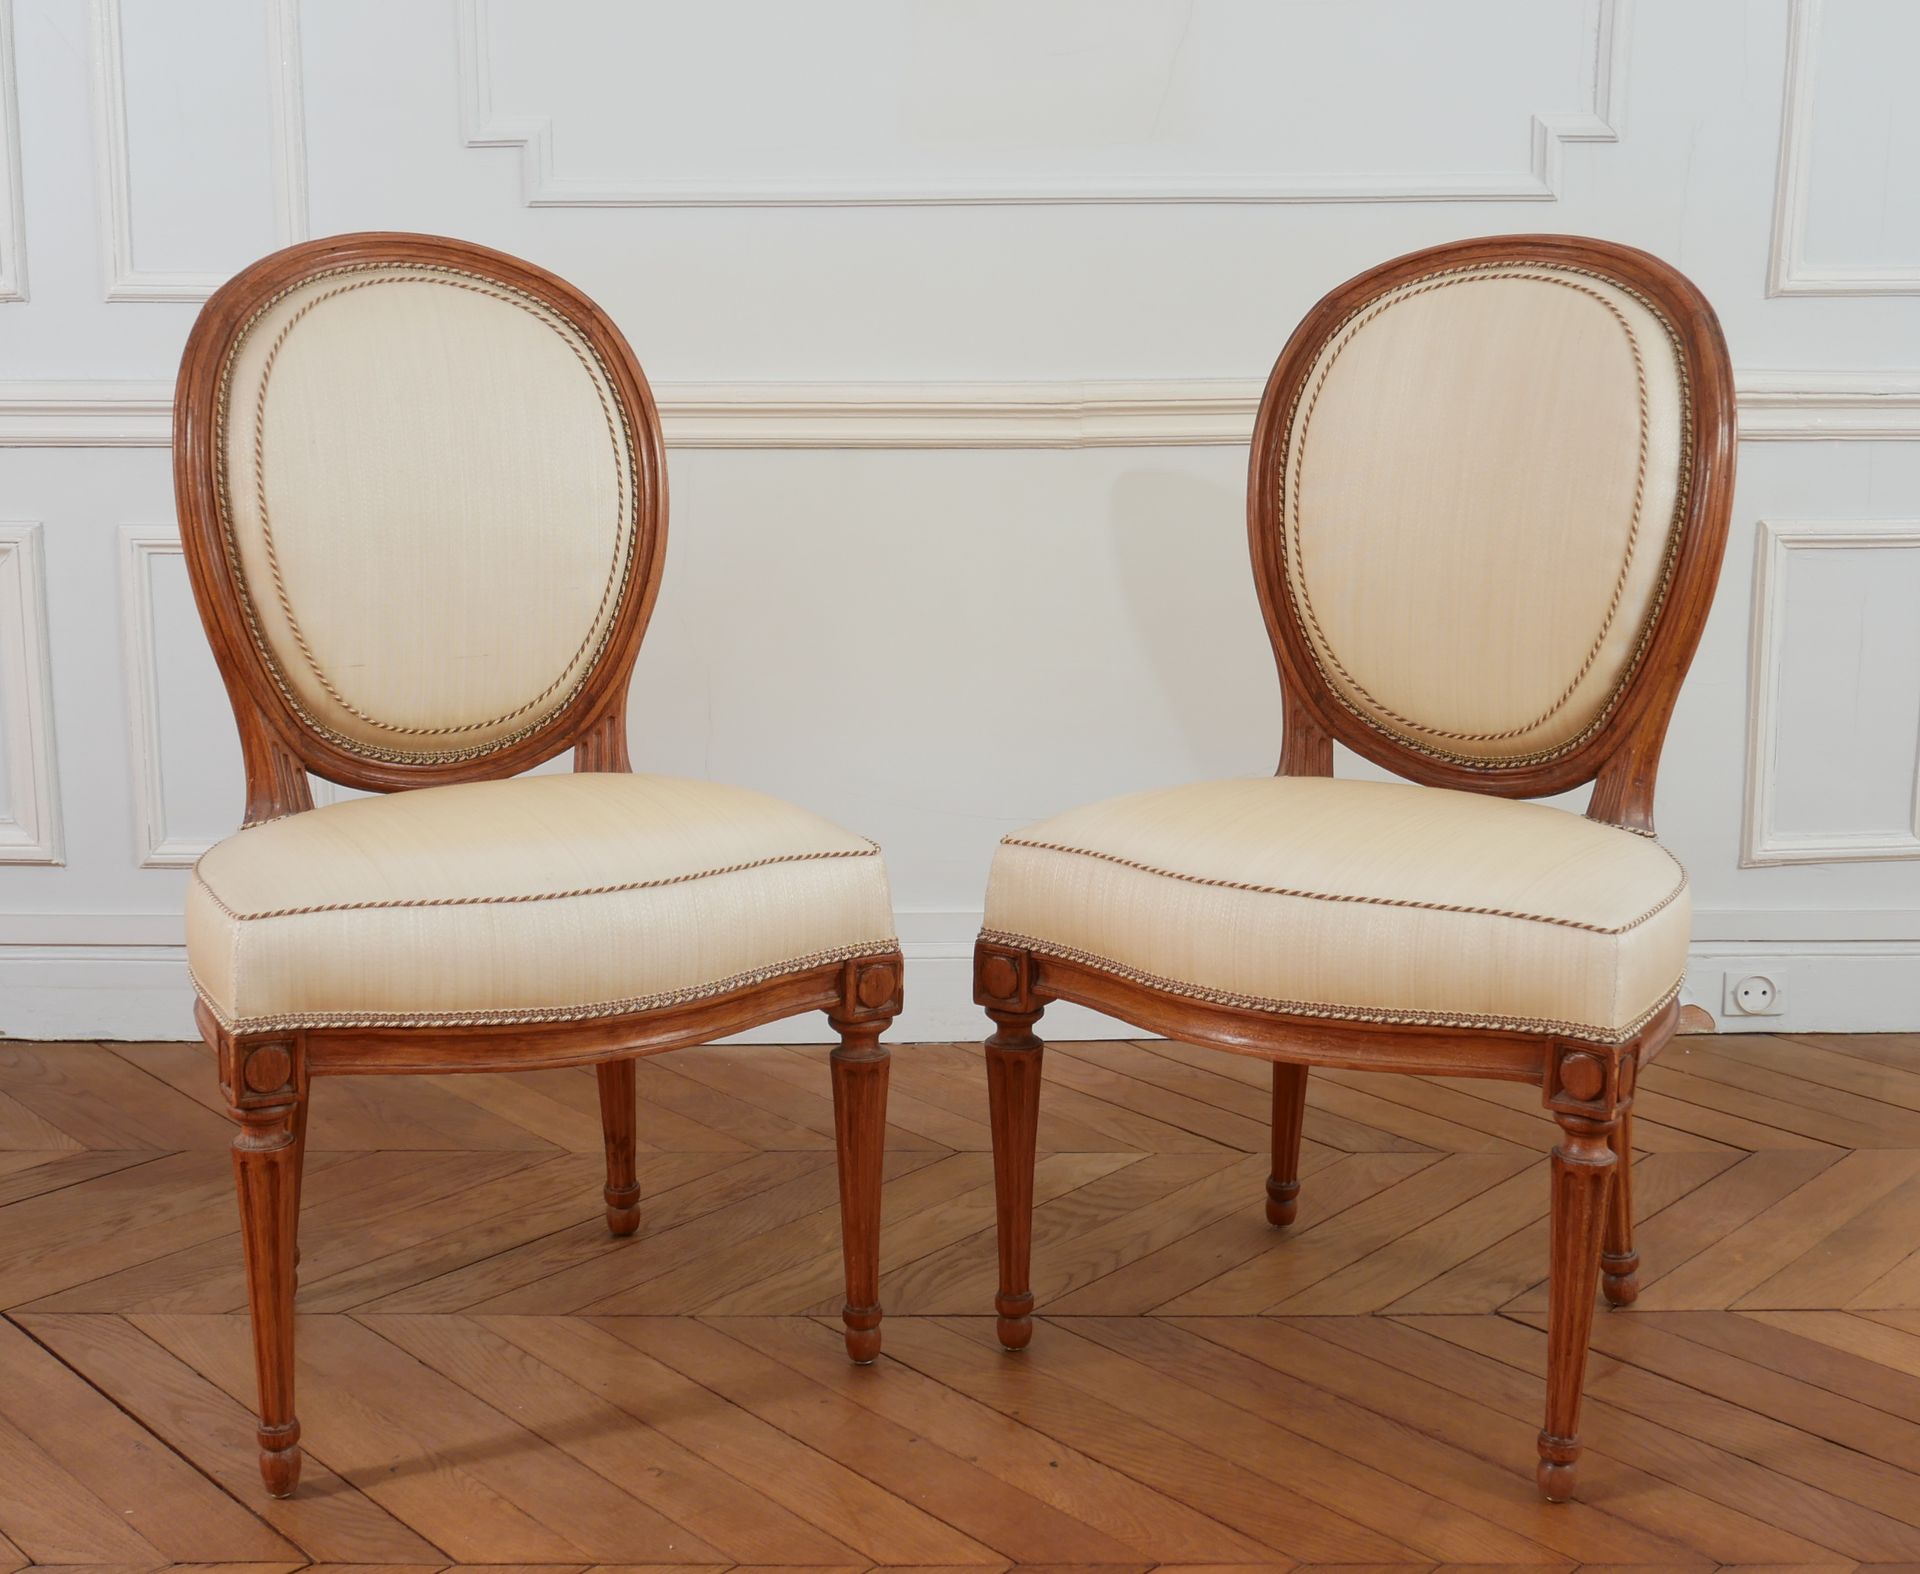 Null Paar Kabriolettstühle mit Medaillonrückenlehne, Stil Louis XVI.

H: 86 B: 5&hellip;